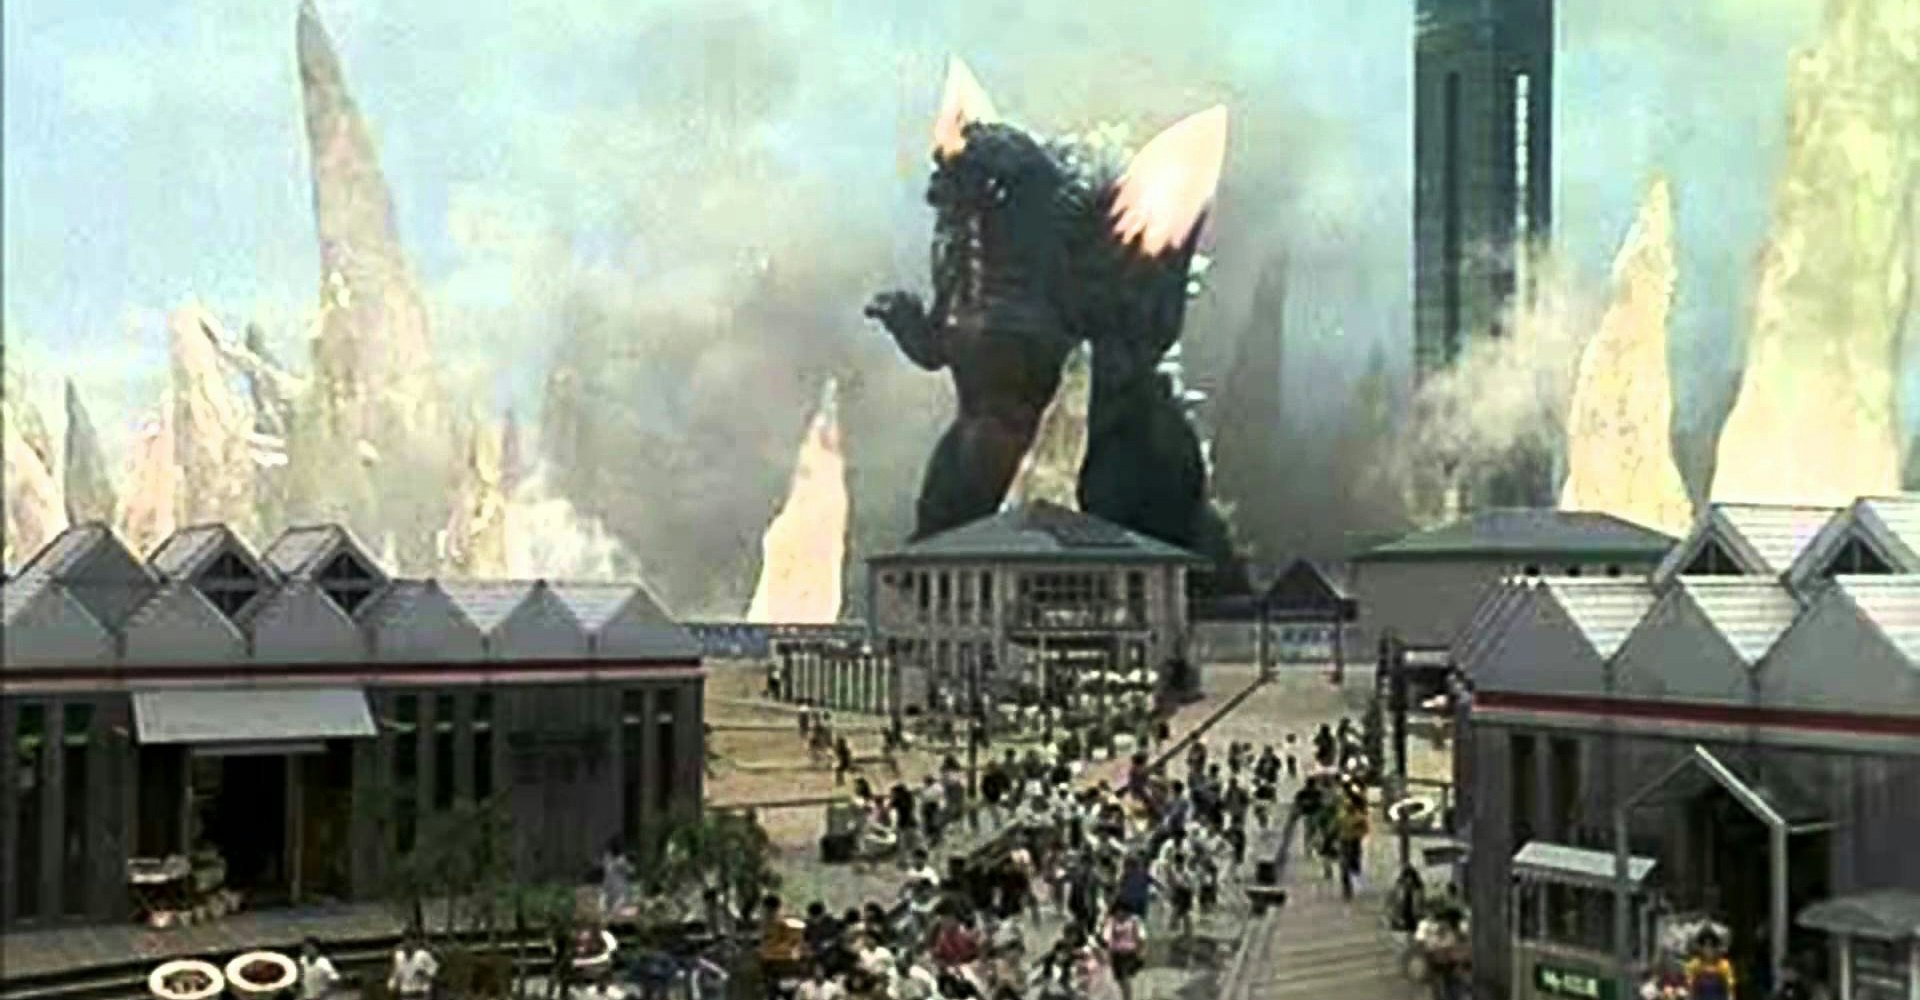 godzilla destroy the city